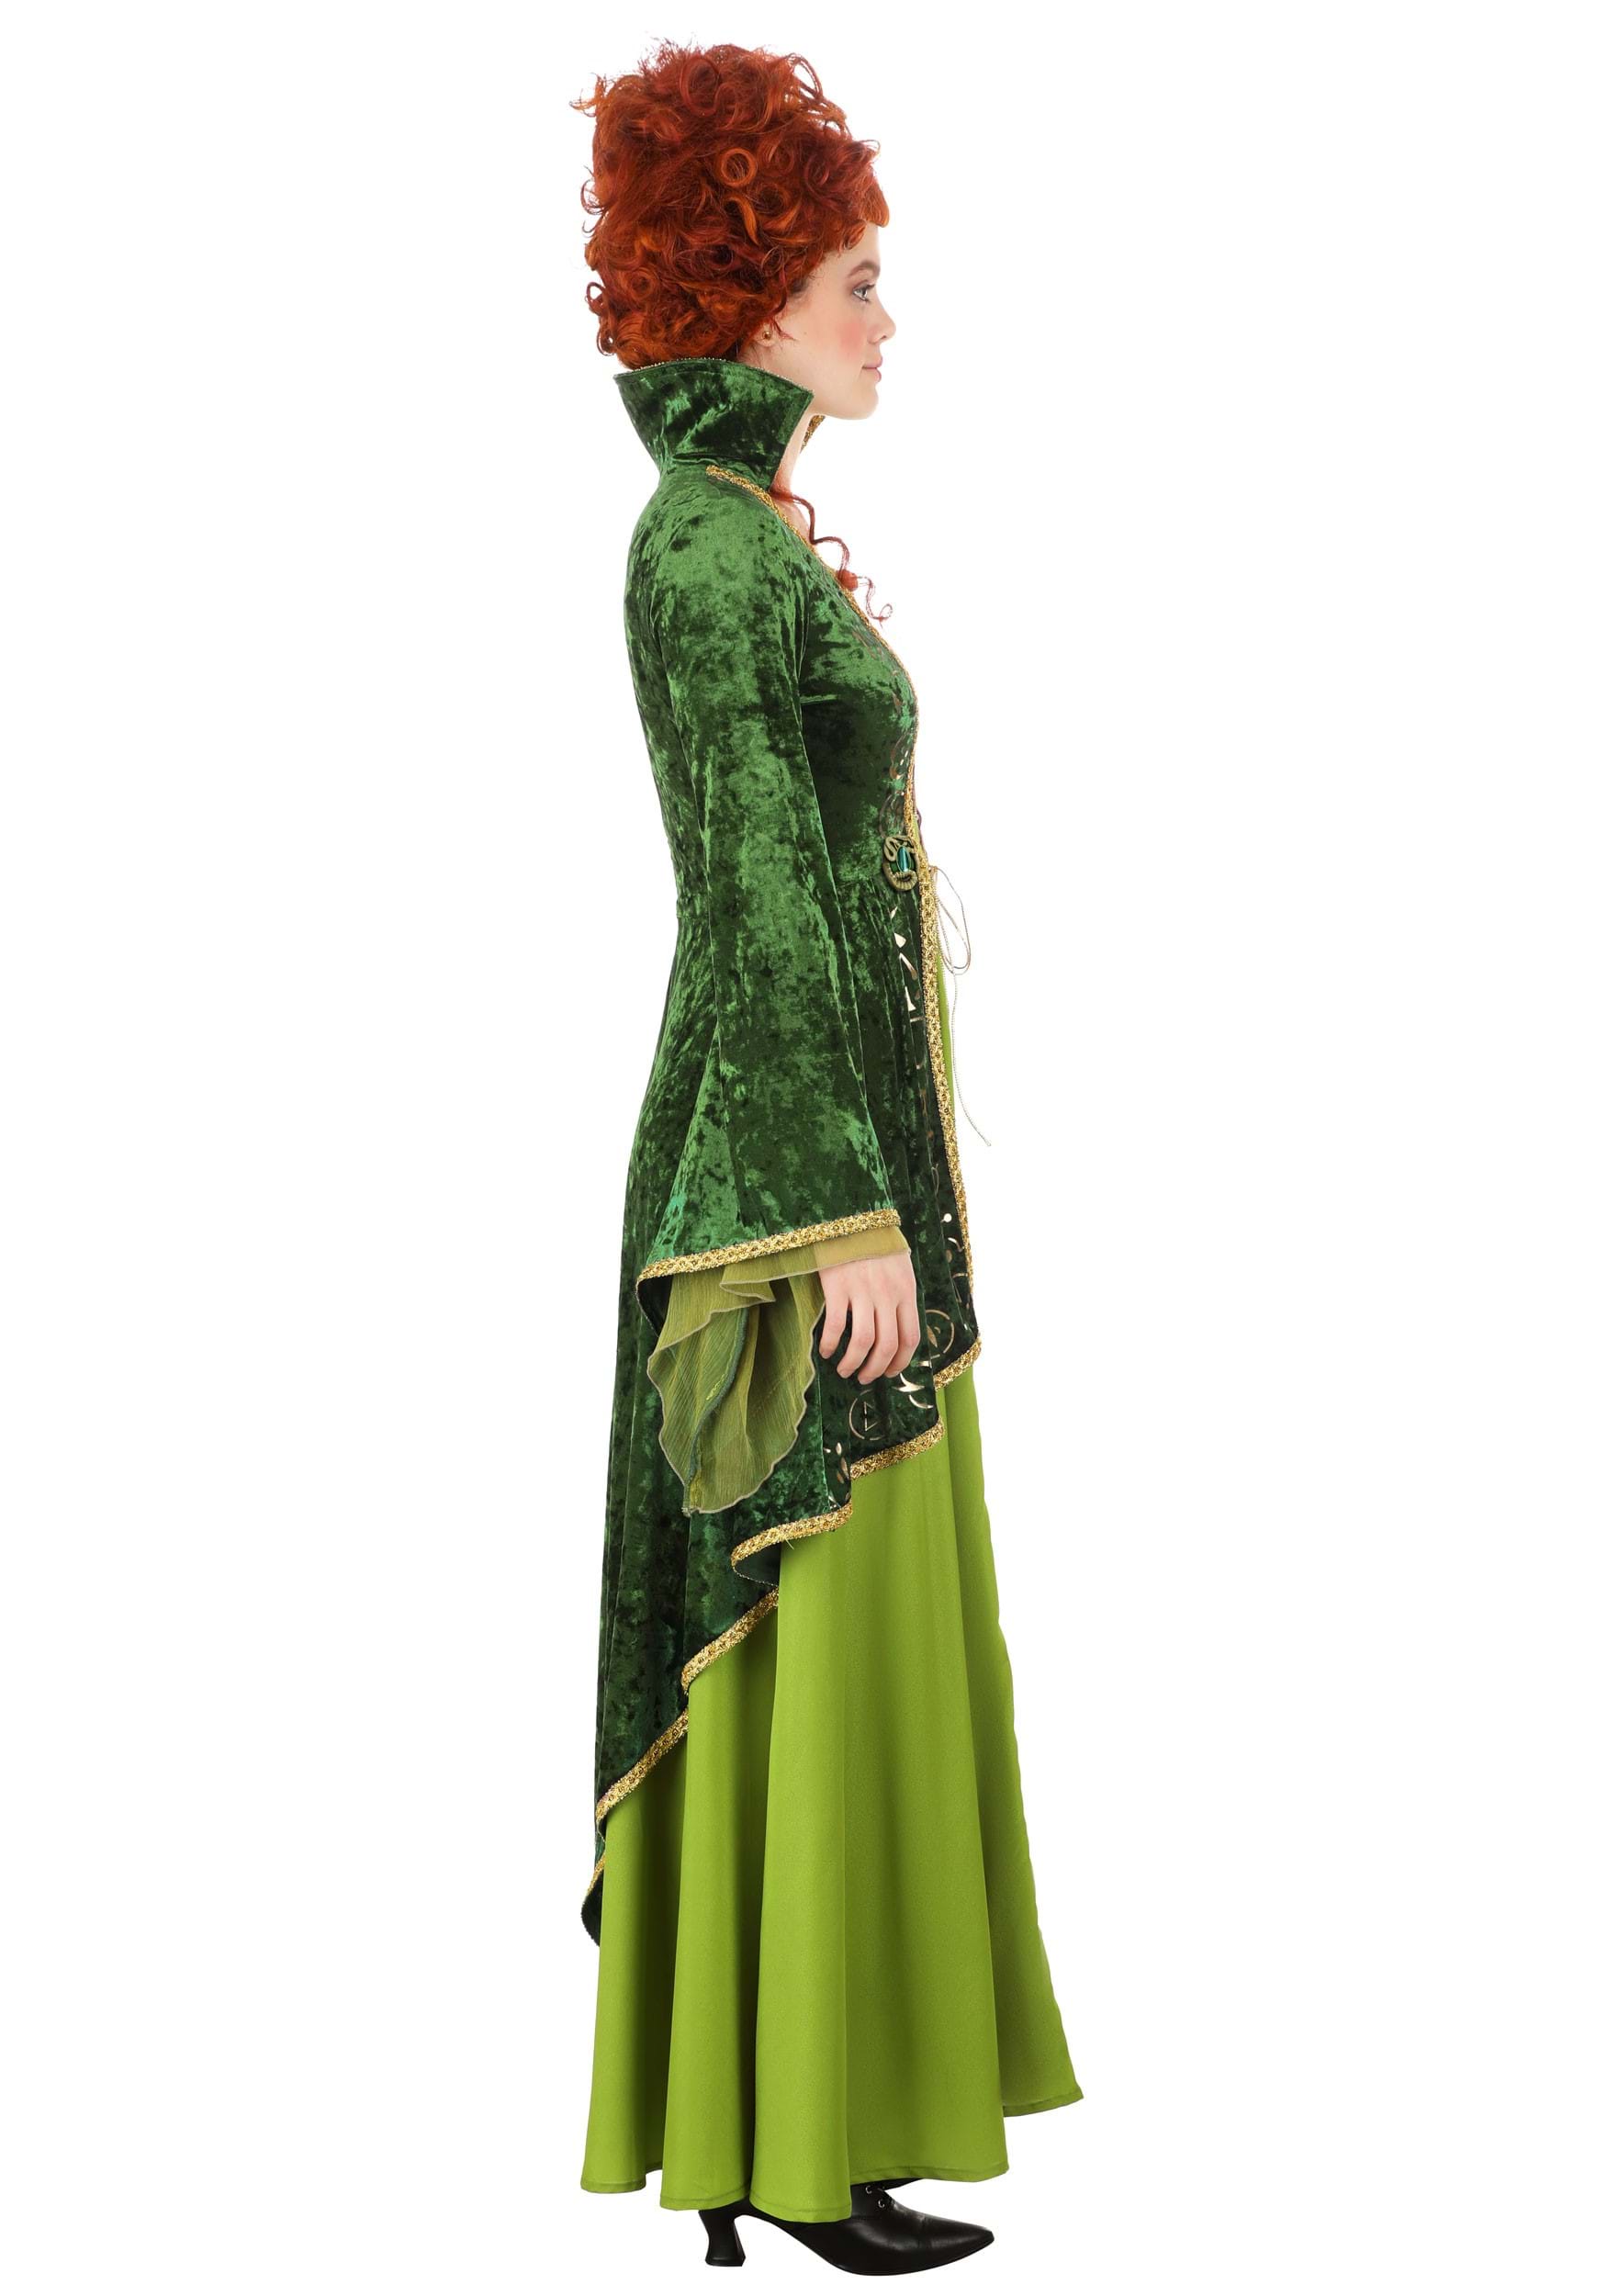 Women's Deluxe Disney Winifred Sanderson Costume